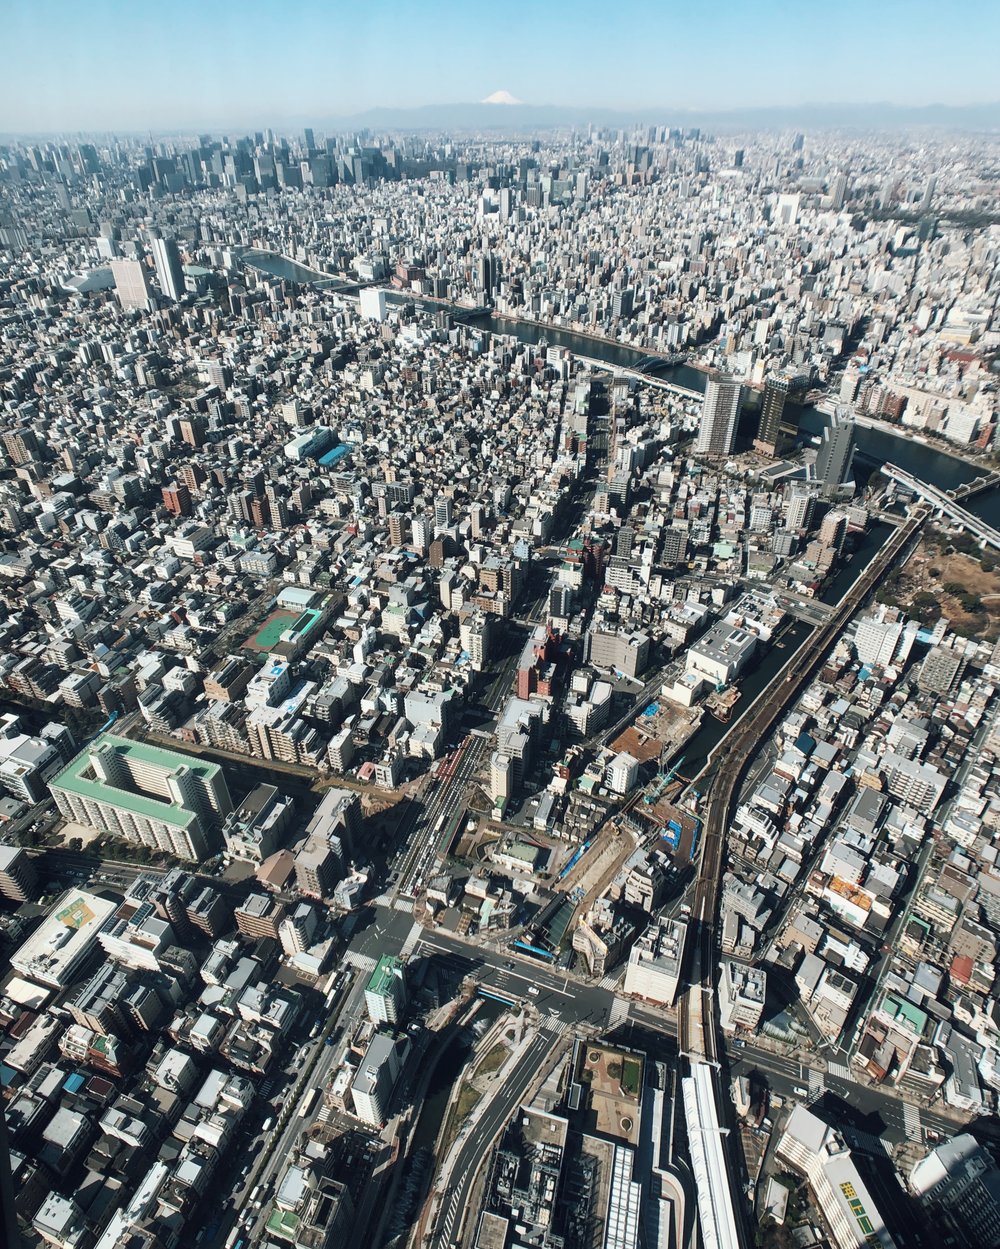 The concrete jungle of Tokyo.